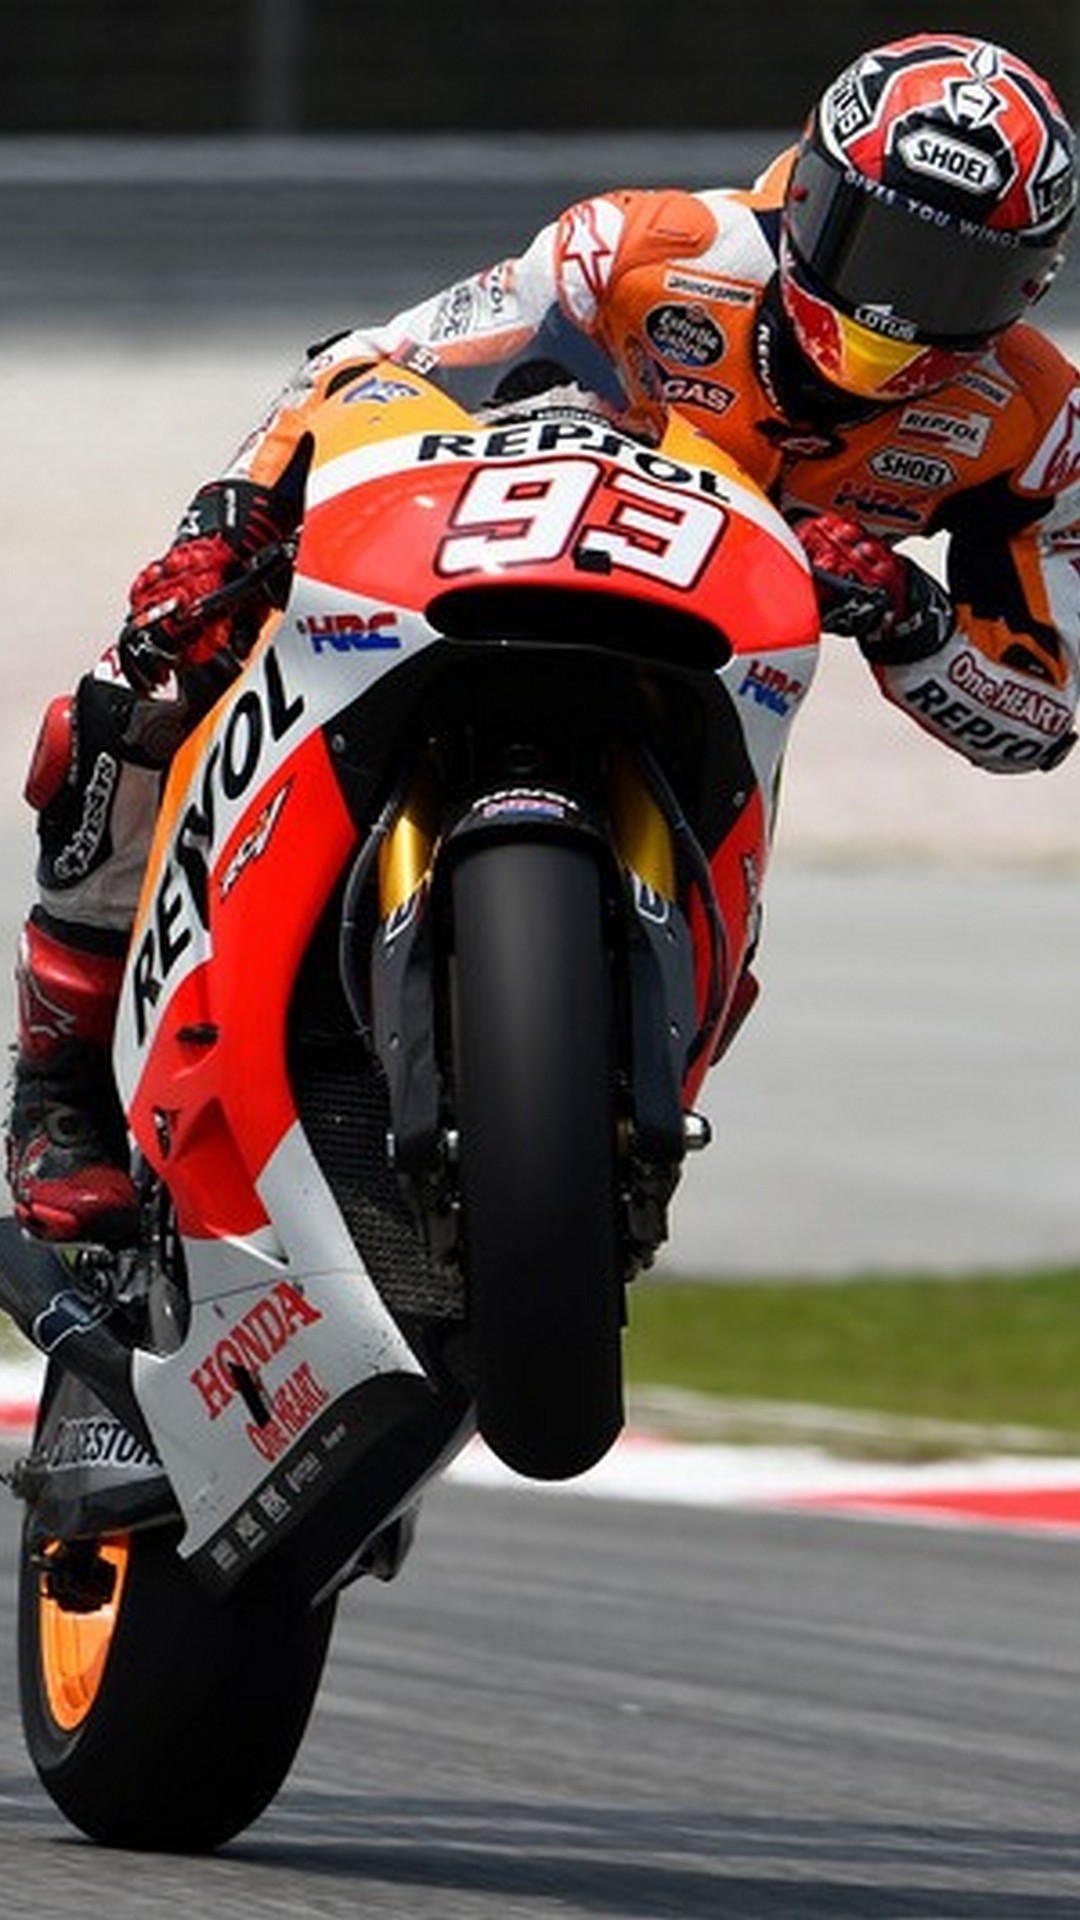 Wallpaper ID 734015  Sports Repsol Honda 1080P Marc Marquez MotoGP  free download